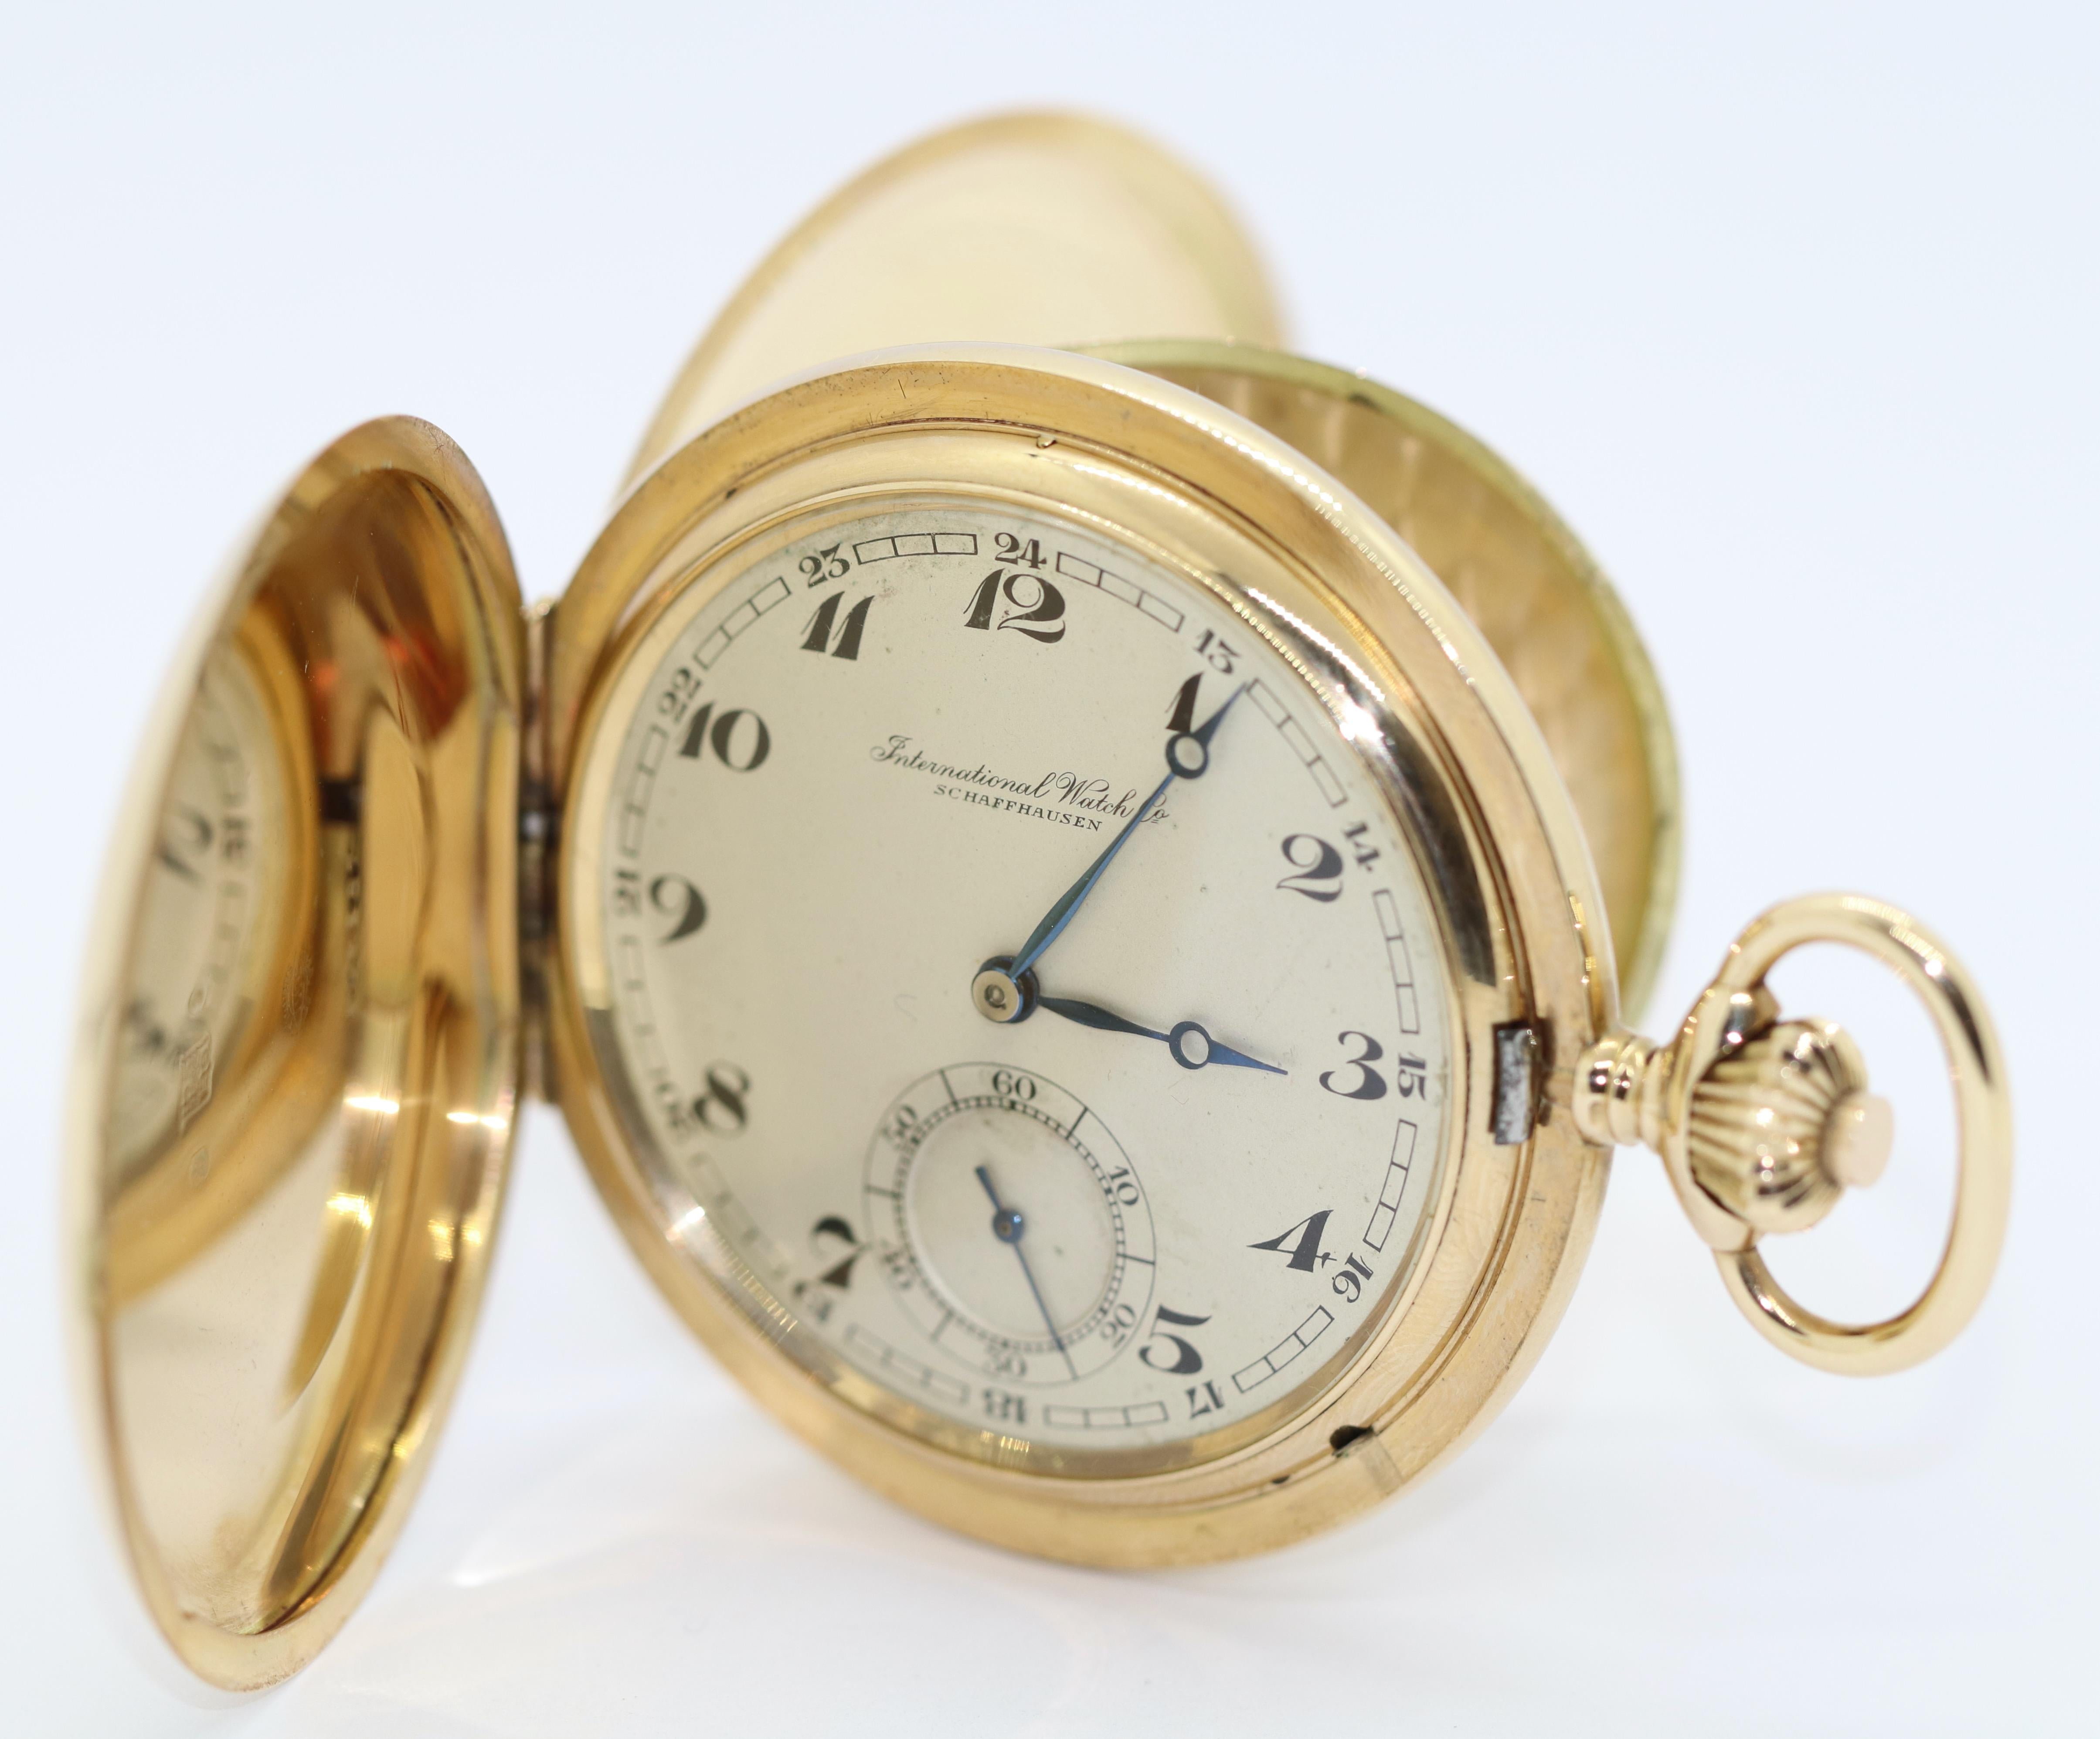 Solide et lourde montre de poche IWC Chasseur d'or 14 carats.

La montre de poche peut être remontée et fonctionne.

Certificat d'authenticité inclus.